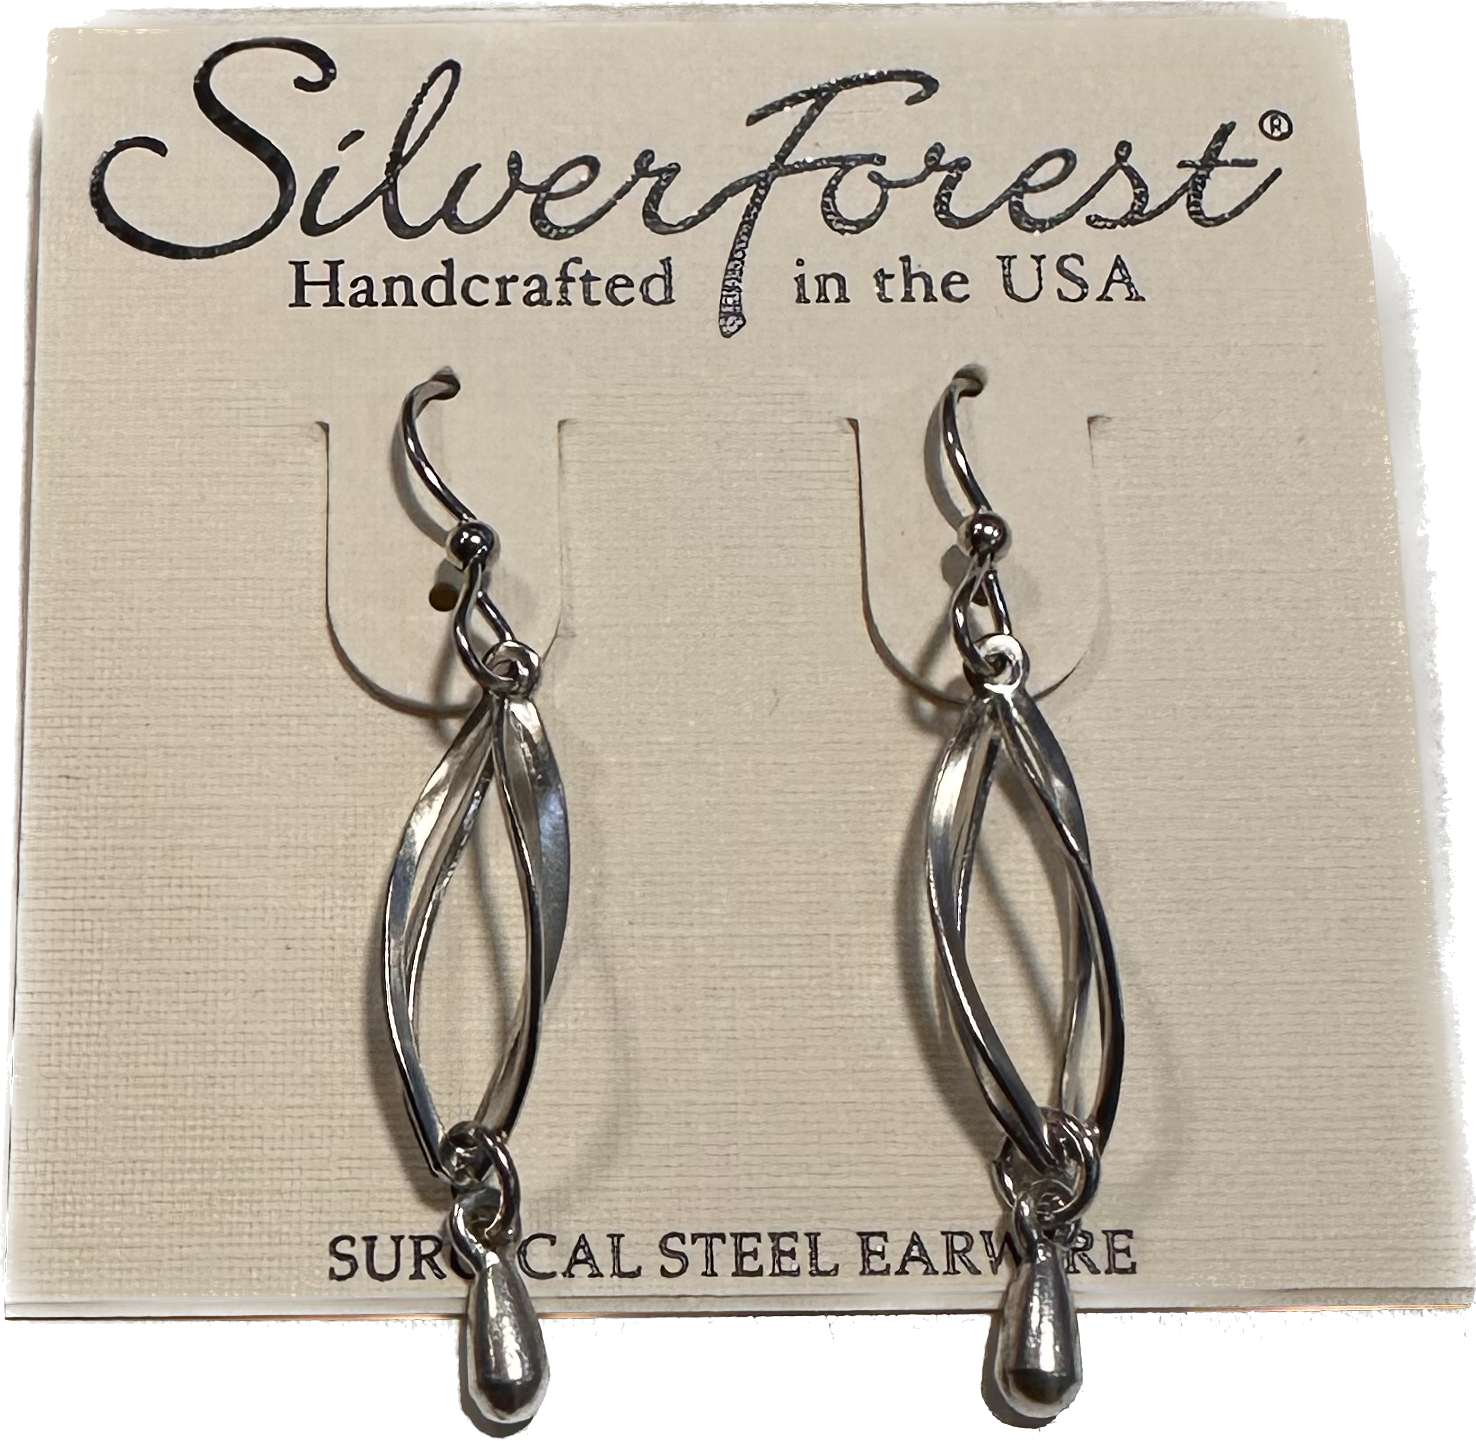 Silver Forest Earrings NE-1624